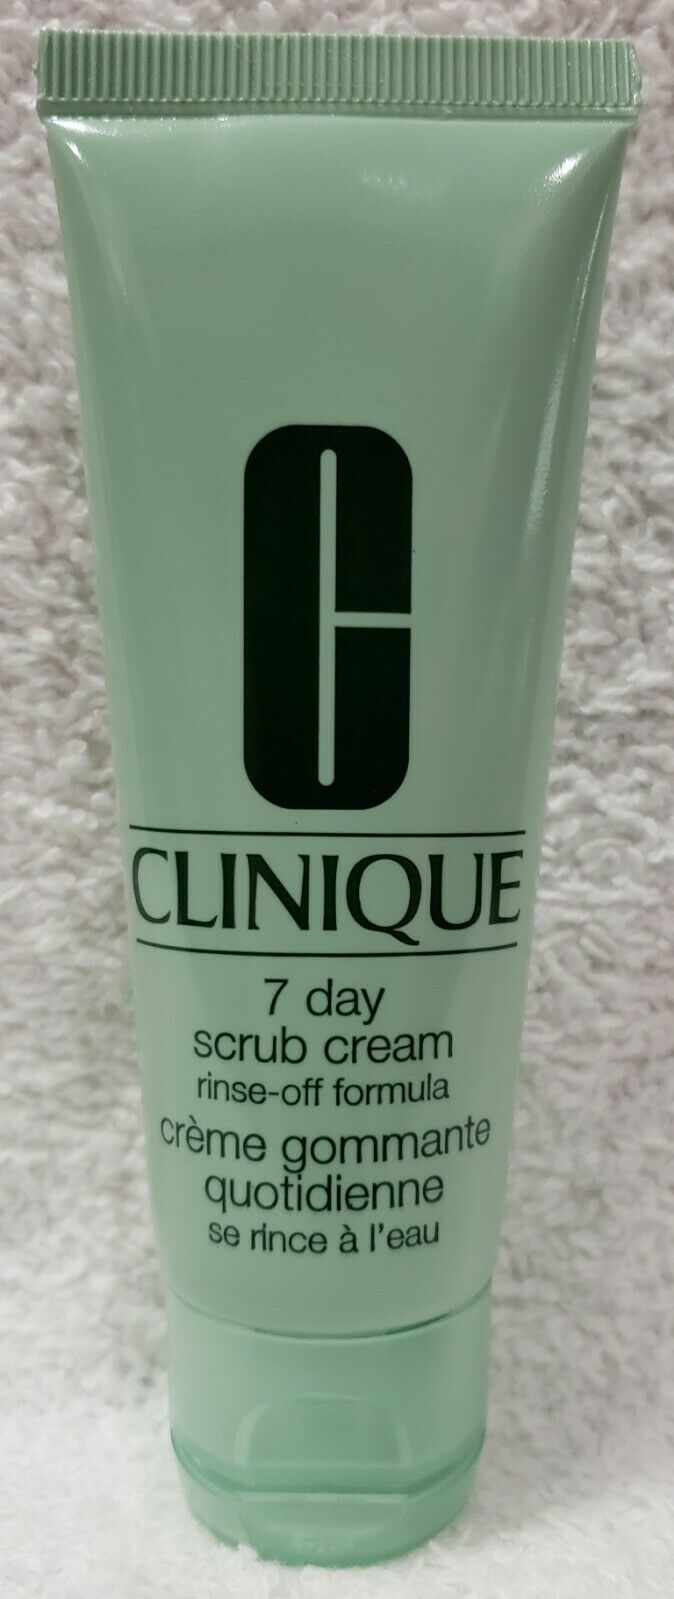 Clinique 7 DAY SCRUB CREAM Rinse-Off Formula Gently Cleanse Skin 1.7 oz/50mL New - $10.88